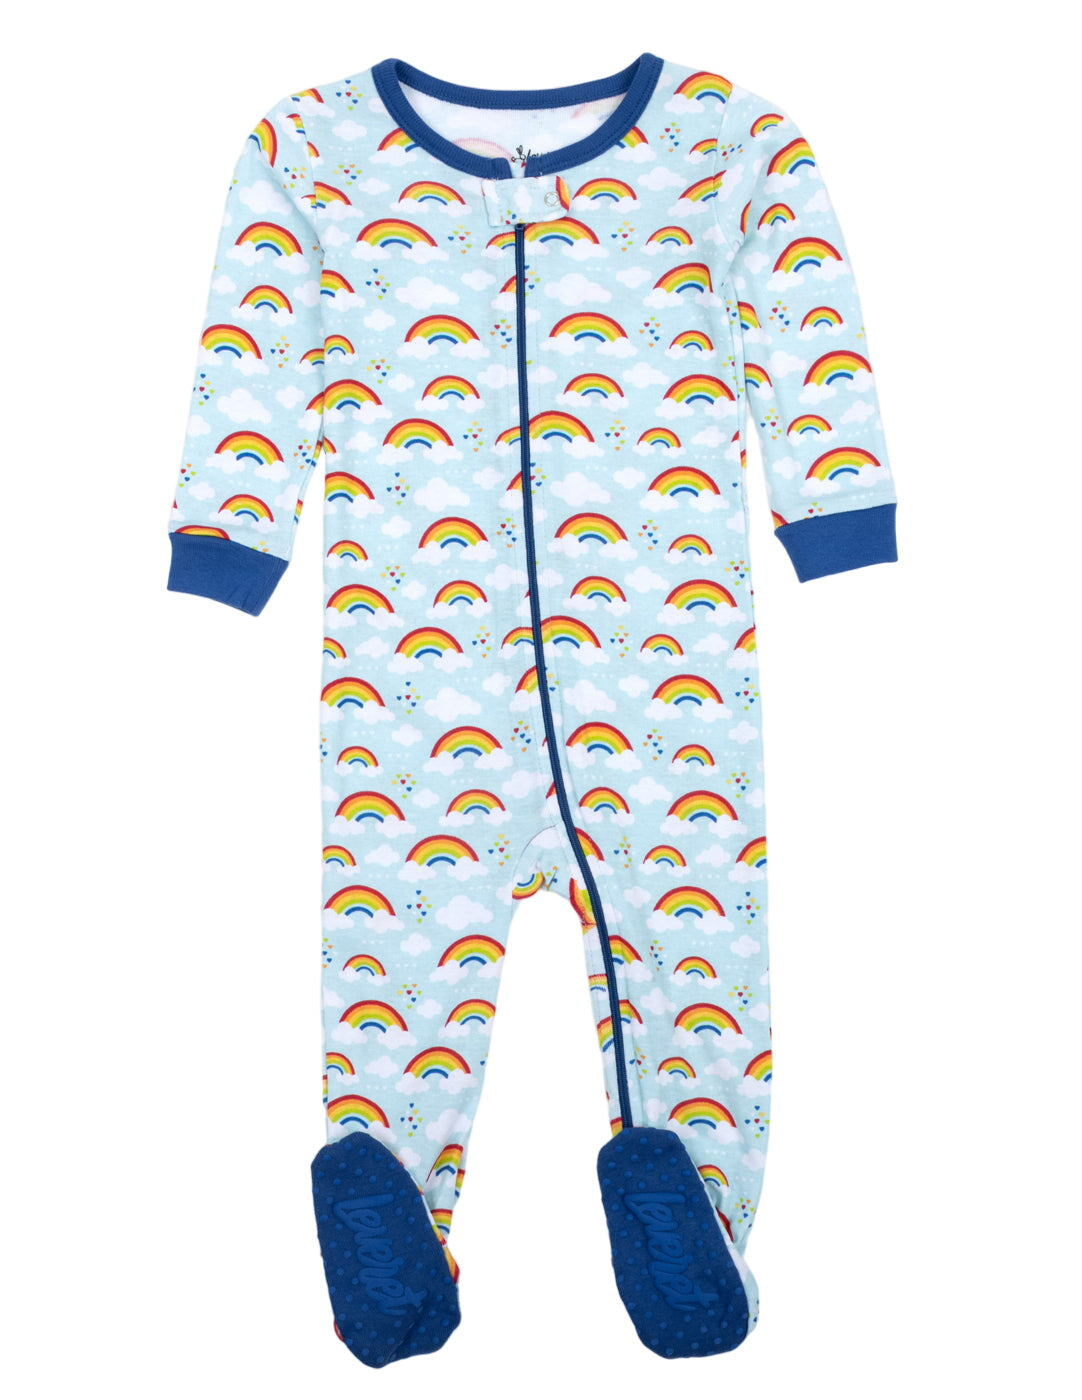 Kids Footed Blue Rainbow Pajamas